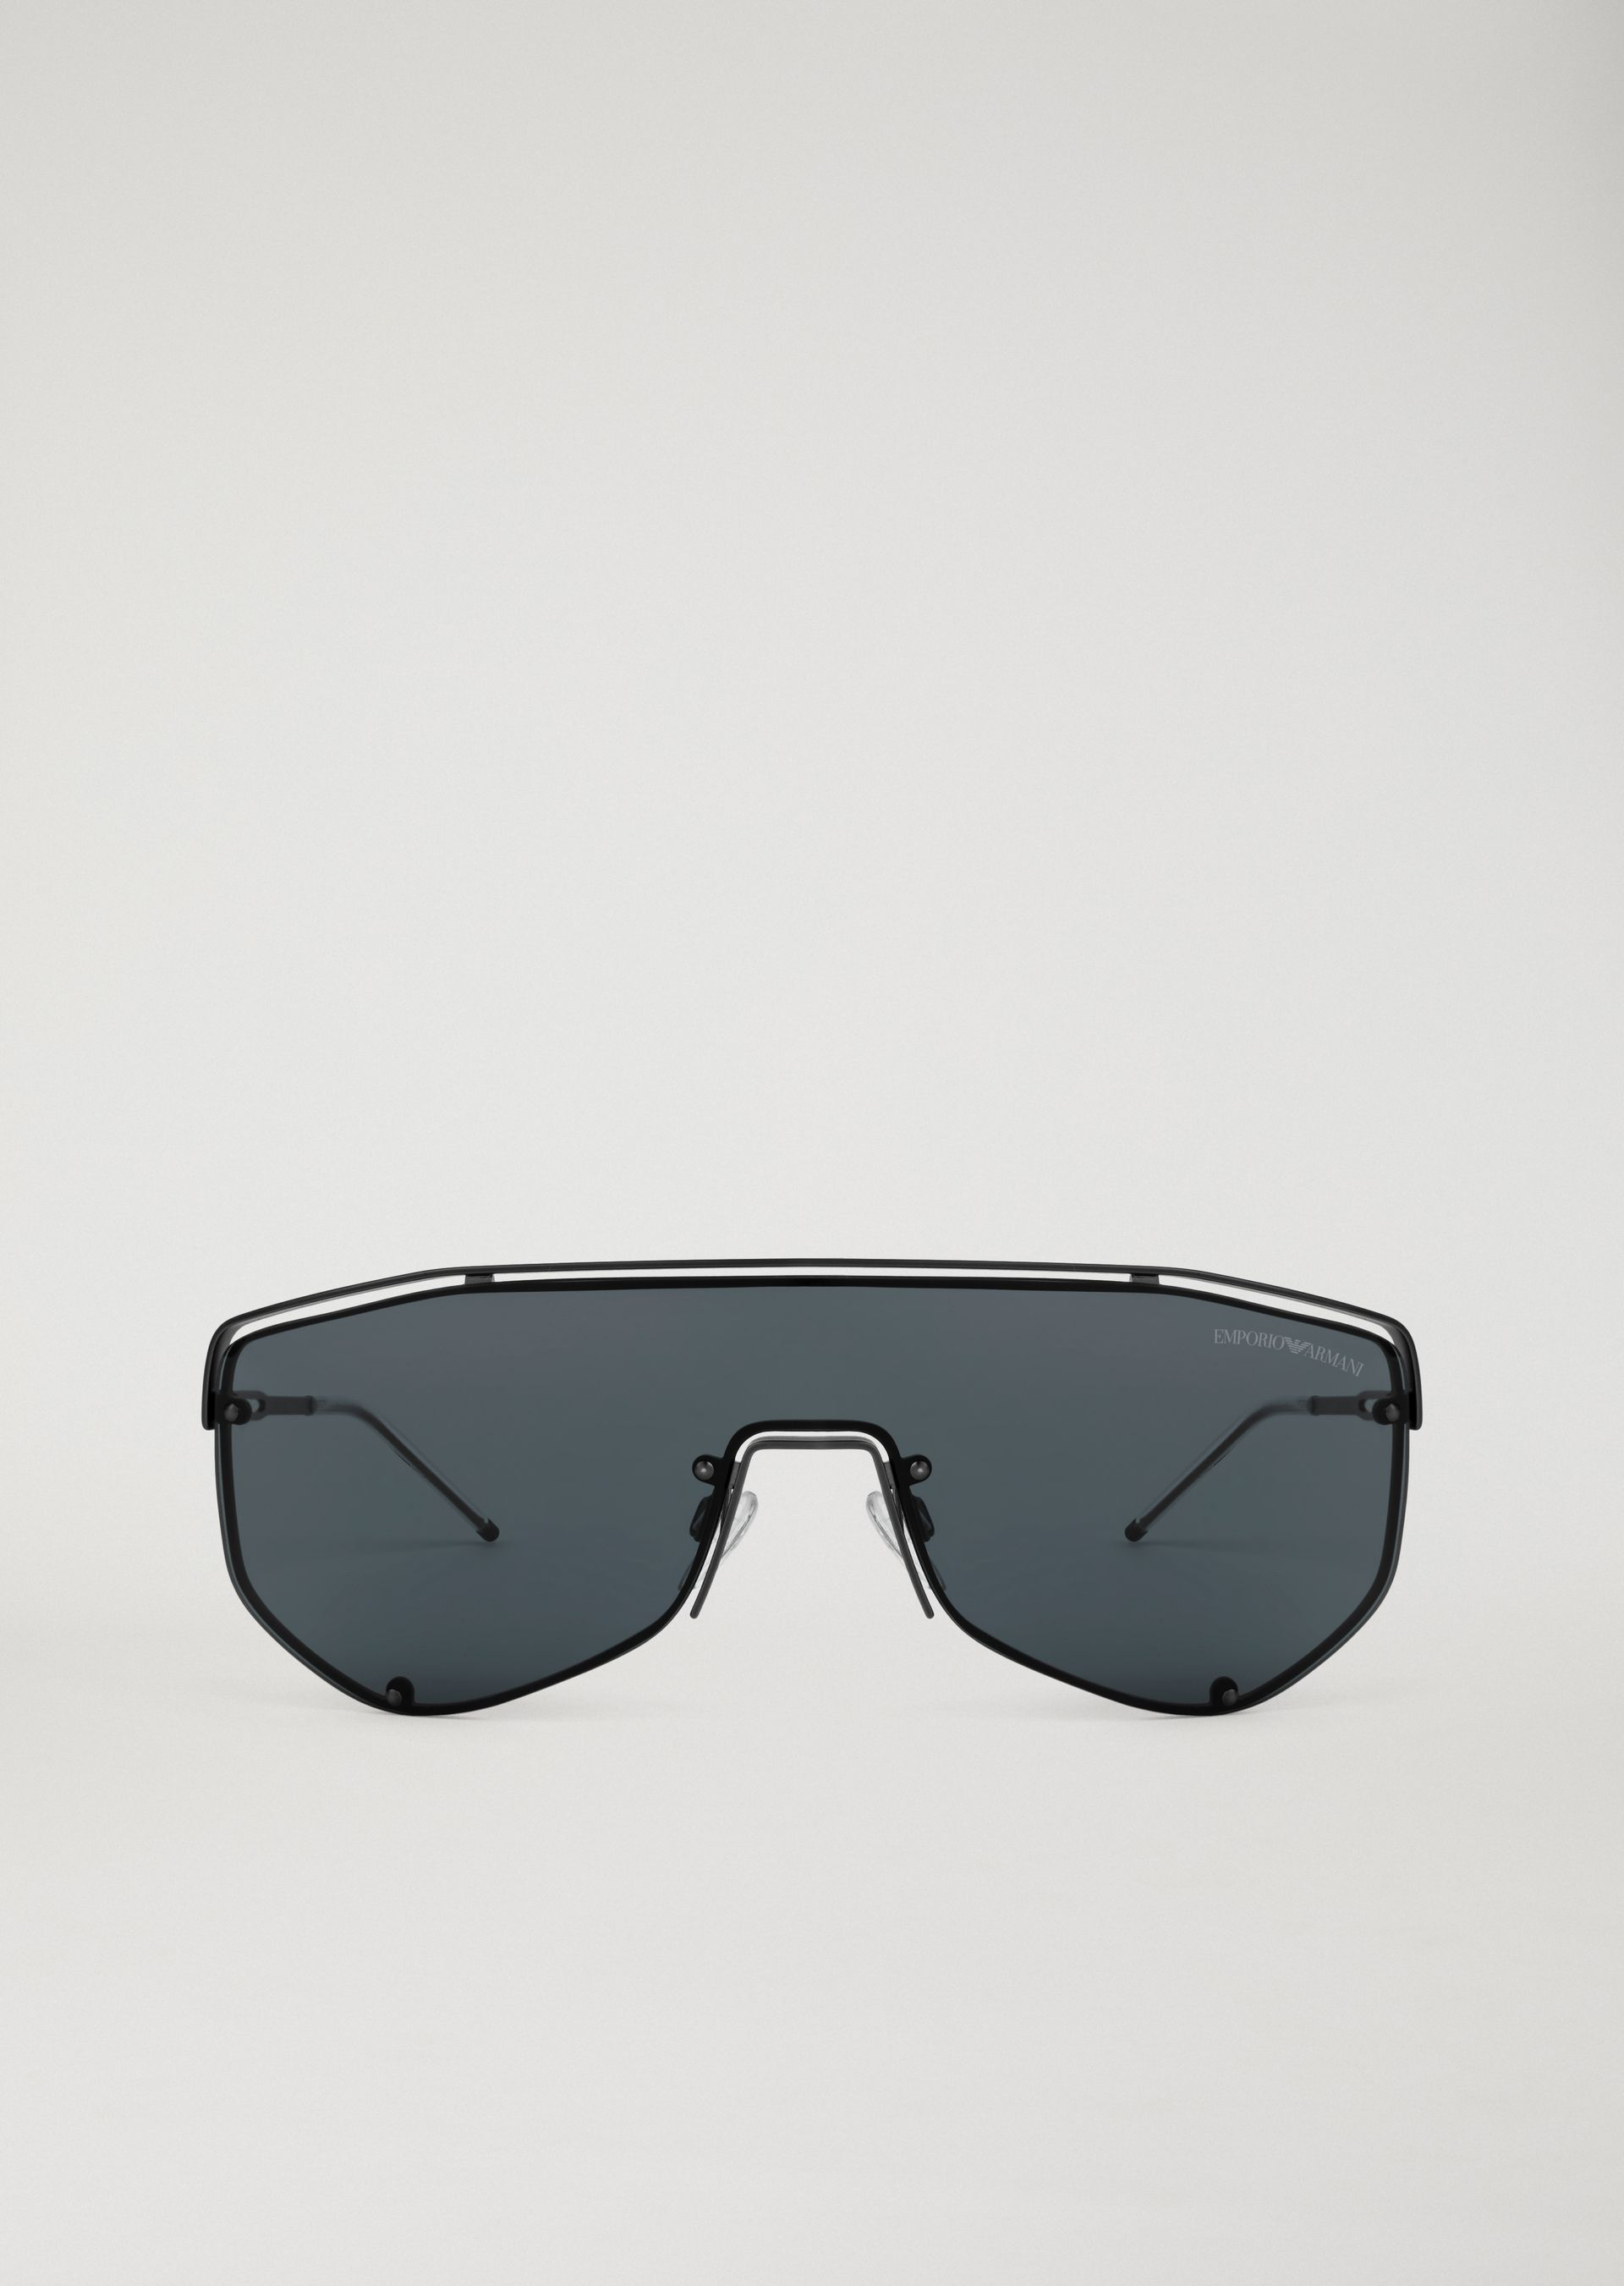 Emporio Armani Sunglasses - Item 46617261 In Gray | ModeSens